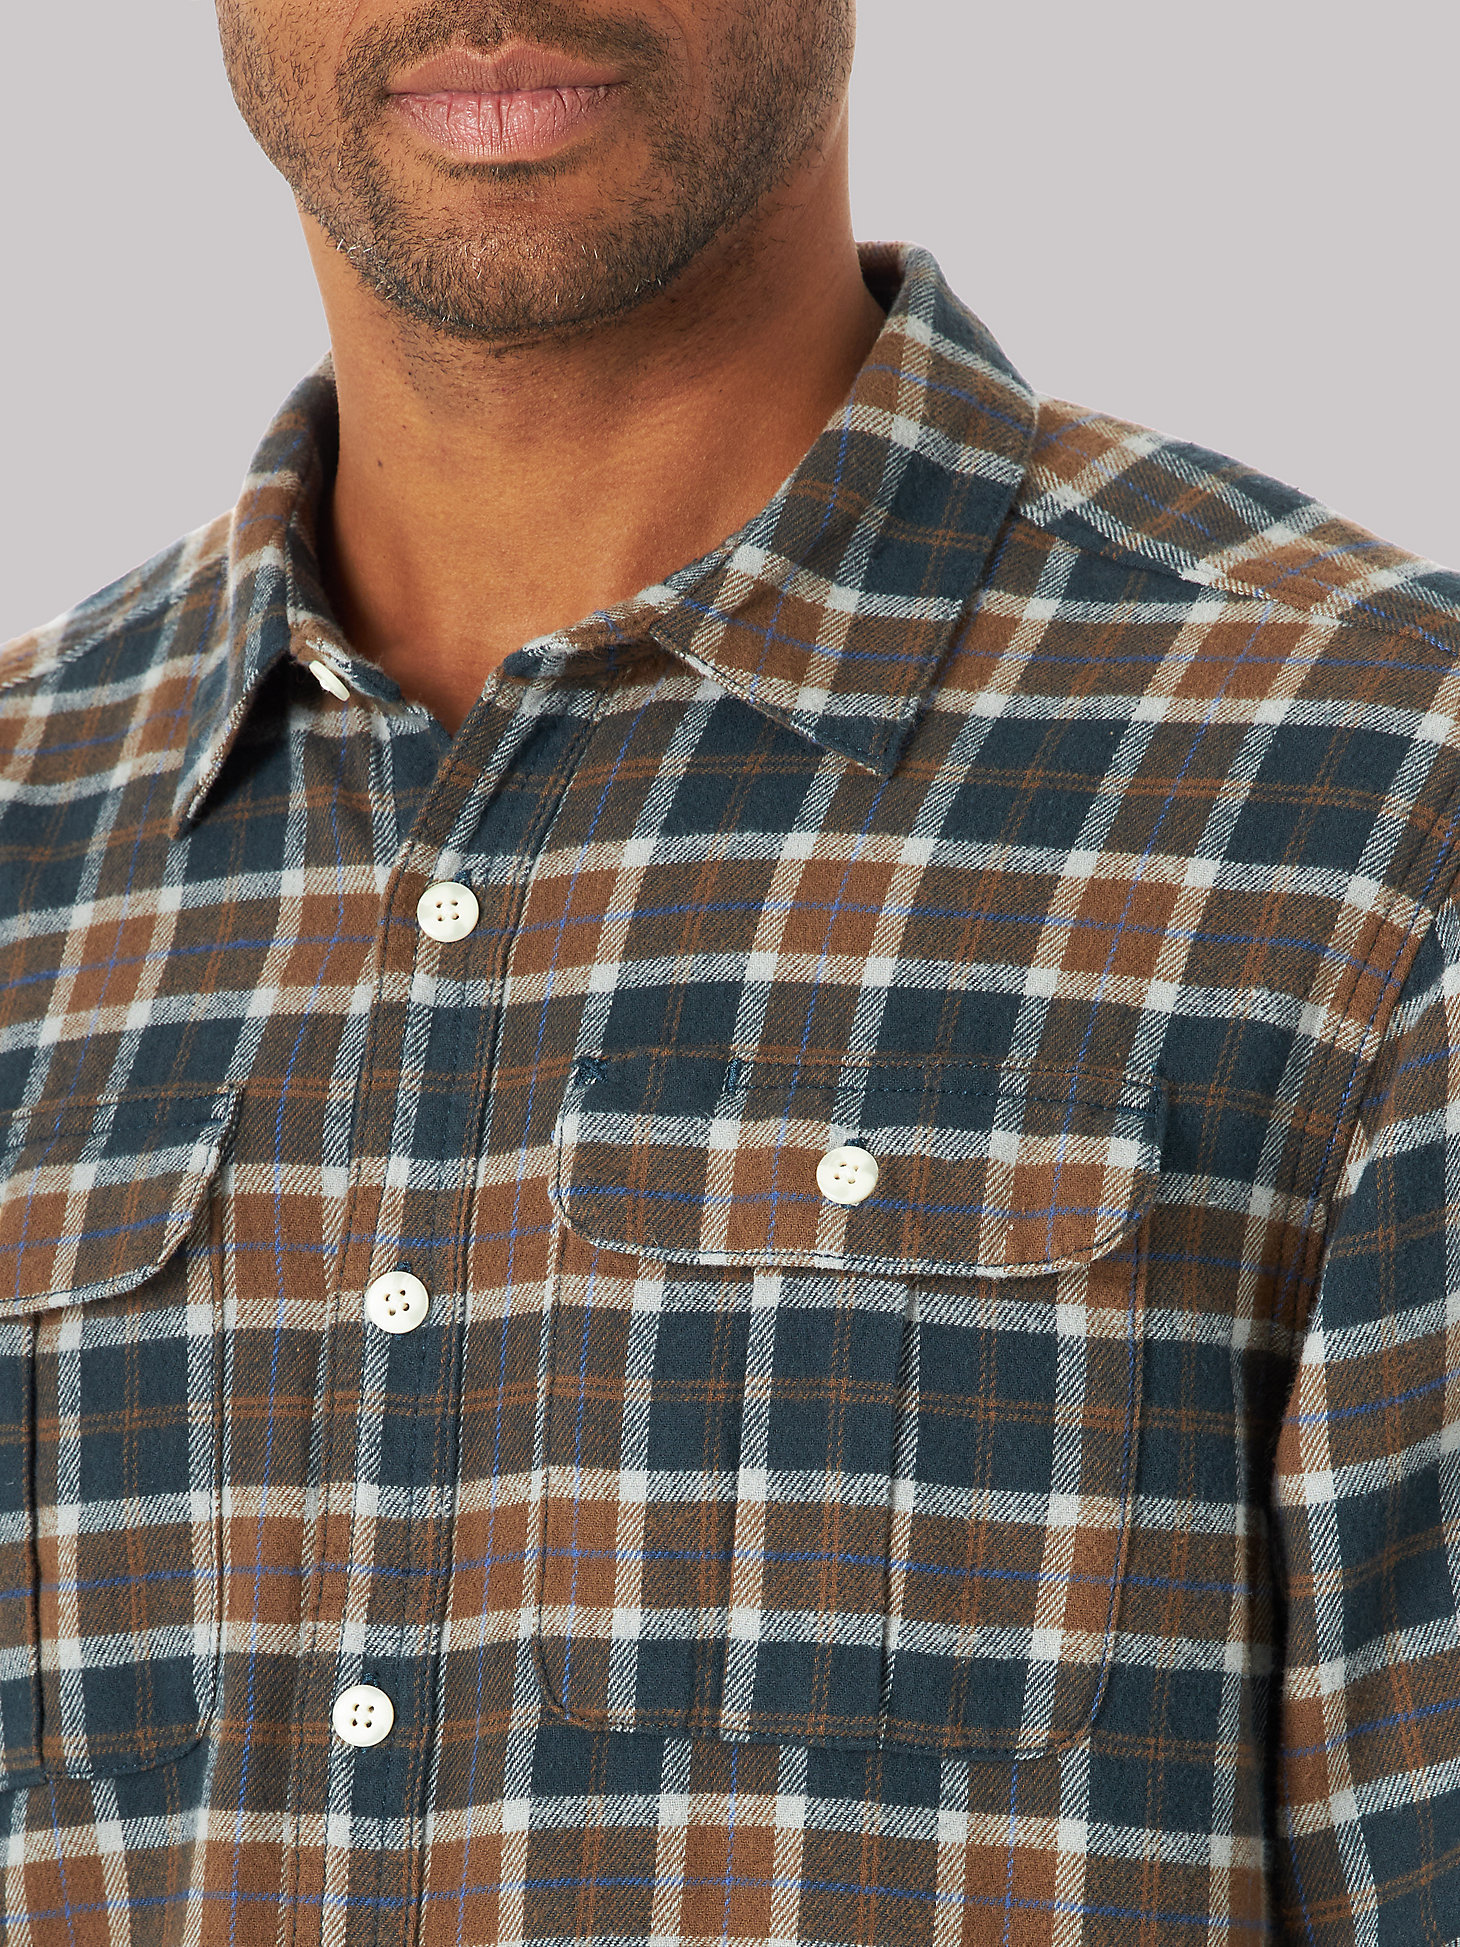 Men's Working West Flannel Plaid Button Down Shirt in Chalk Line alternative view 2